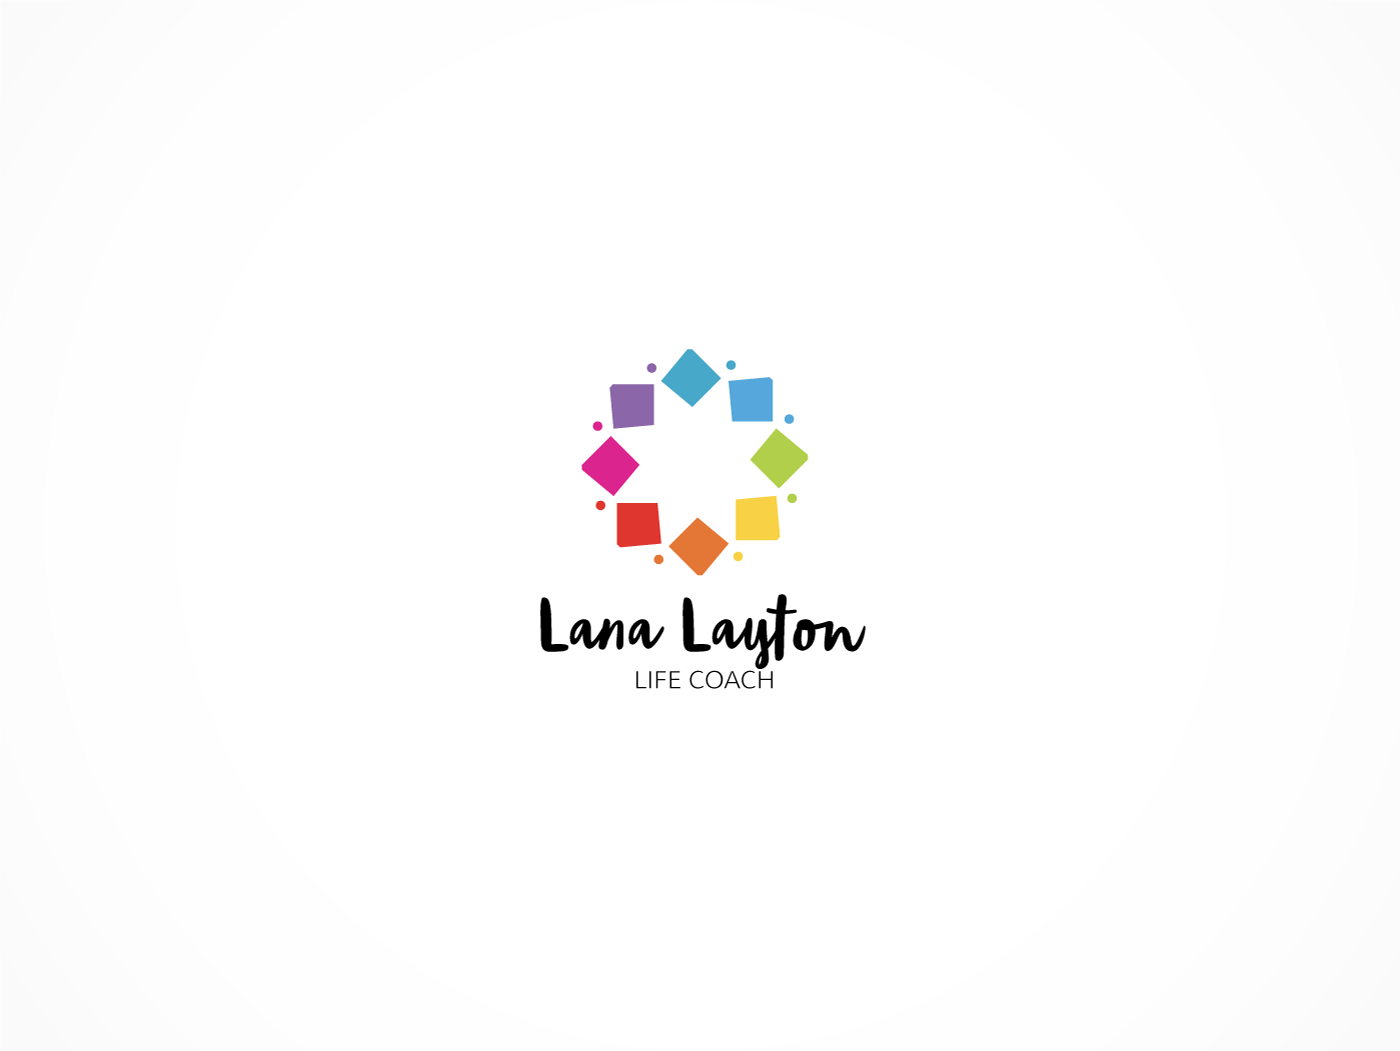 Coaching Logo - Conservative, Serious, Life Coaching Logo Design for Lana Layton